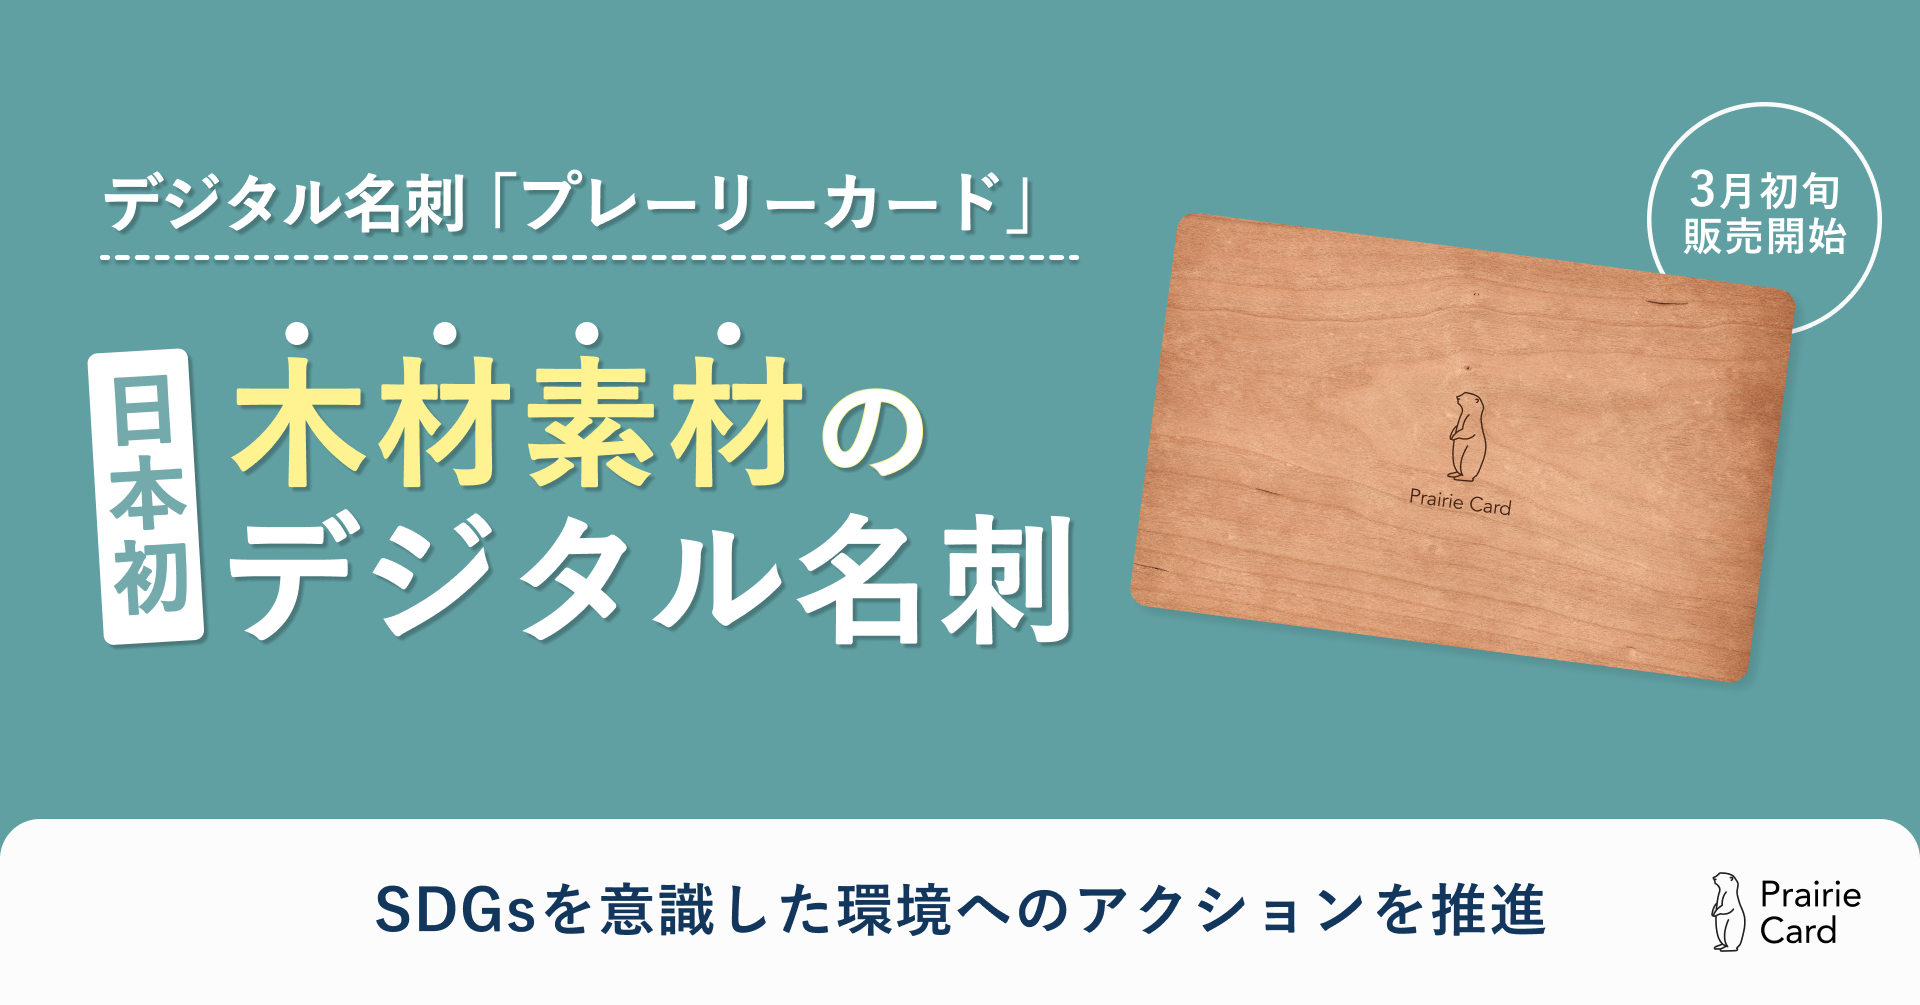 日本初”木材素材”のデジタル名刺を3月初旬より販売開始いたします